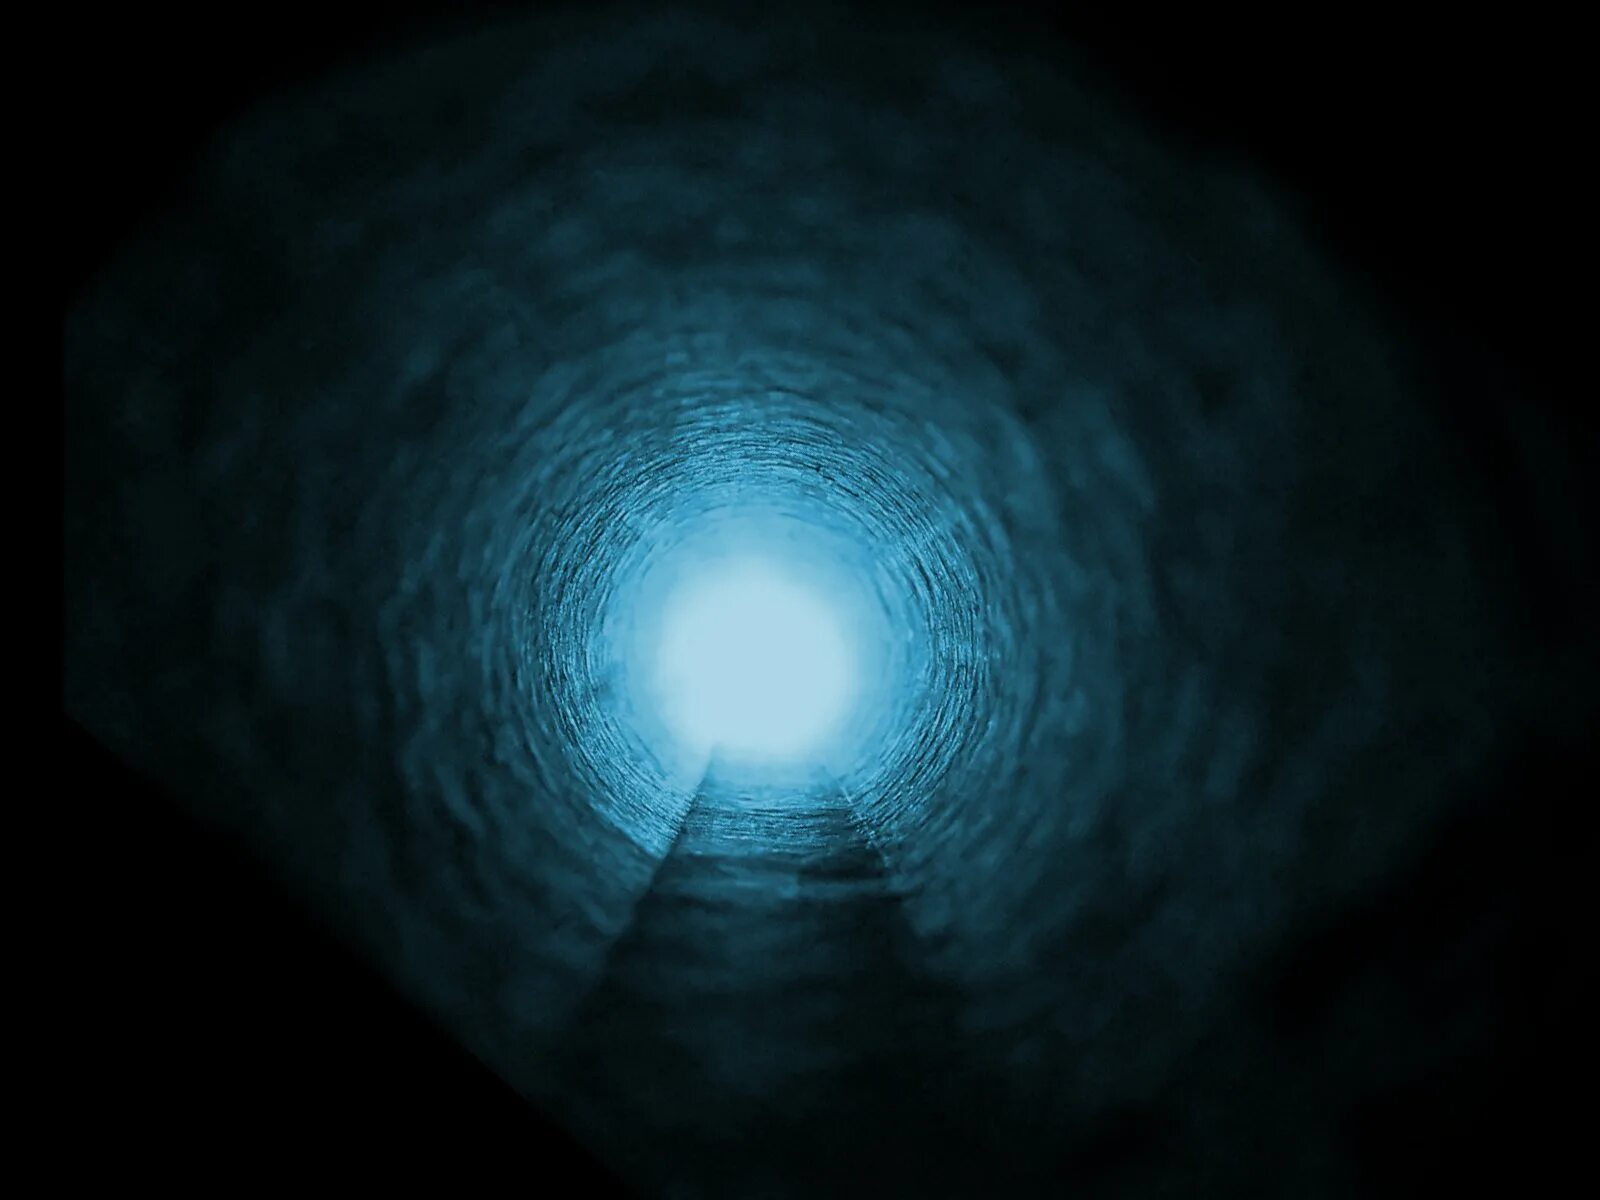 В конце тоннеля свет песня. Свет в конце тоннеля. Свет в конце тоннеля картинки. Свет в конце тоннеля фон. Свет в конце тоннеля околосмертный опыт.